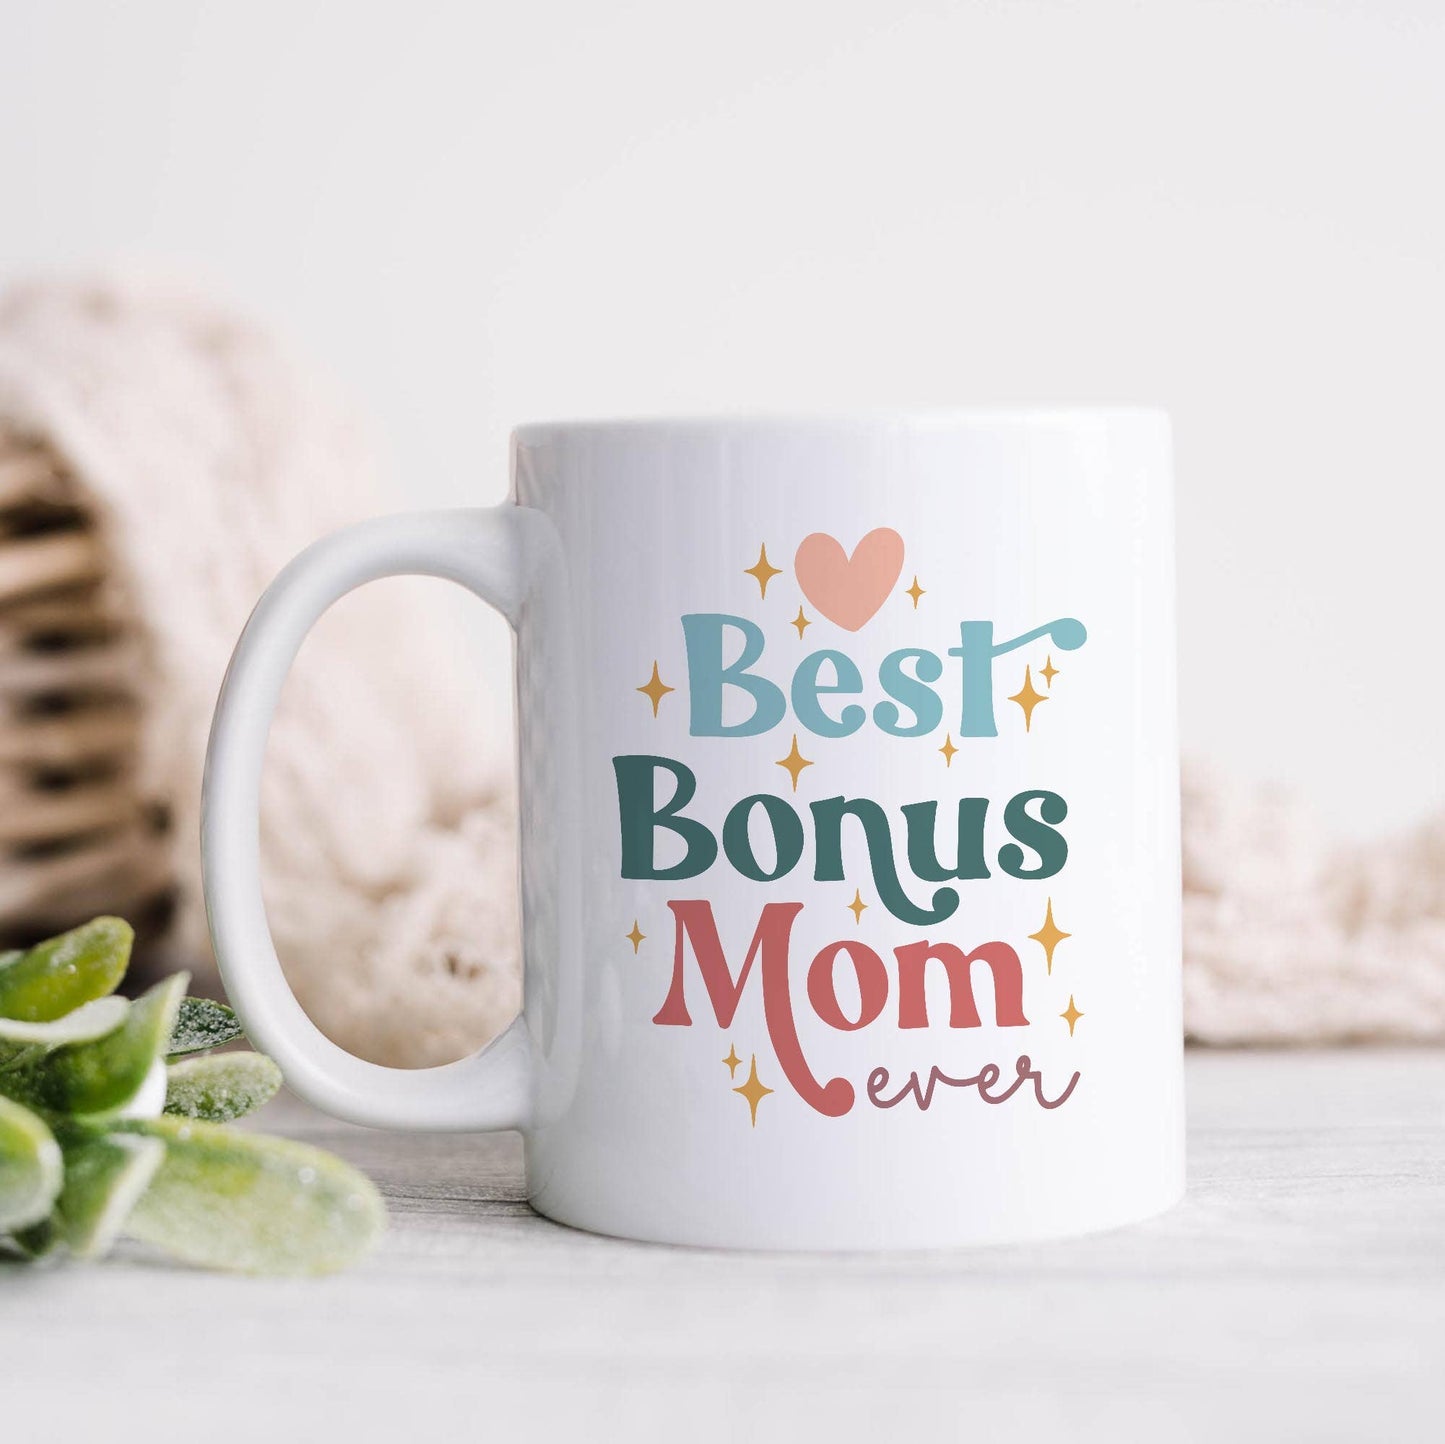 Heart & Willow Prints - Best Bonus Mom Ever Ceramic Mug, Mother's Day Gift: 11oz